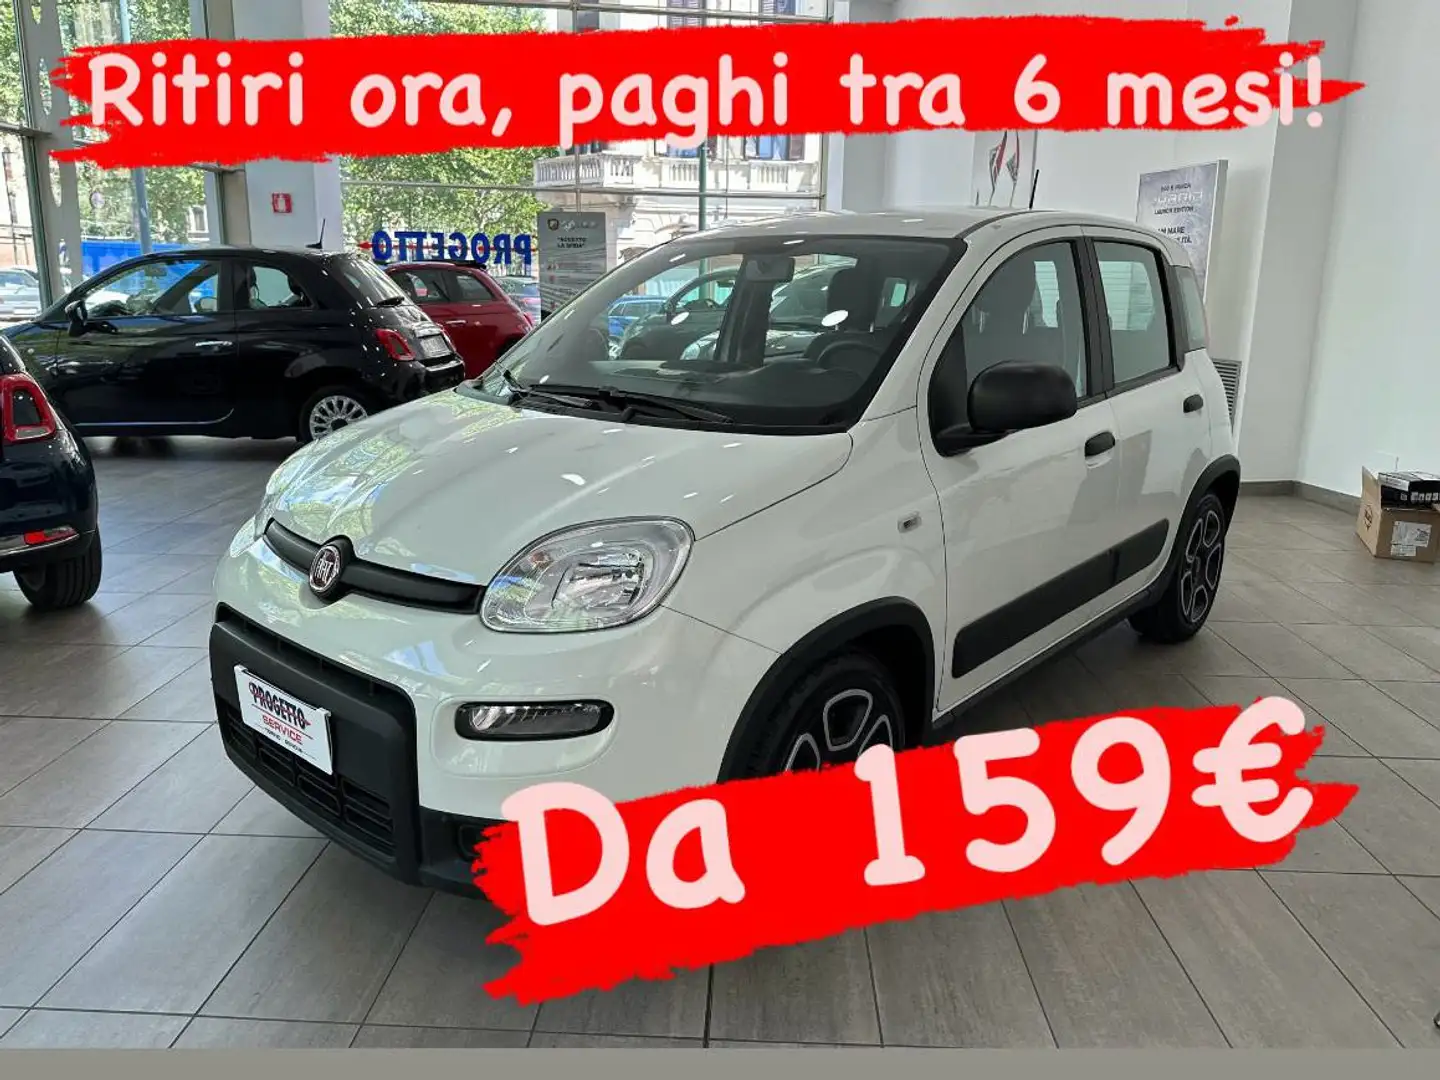 Fiat Panda DA 159€ TRA 6 MESI! Biały - 1